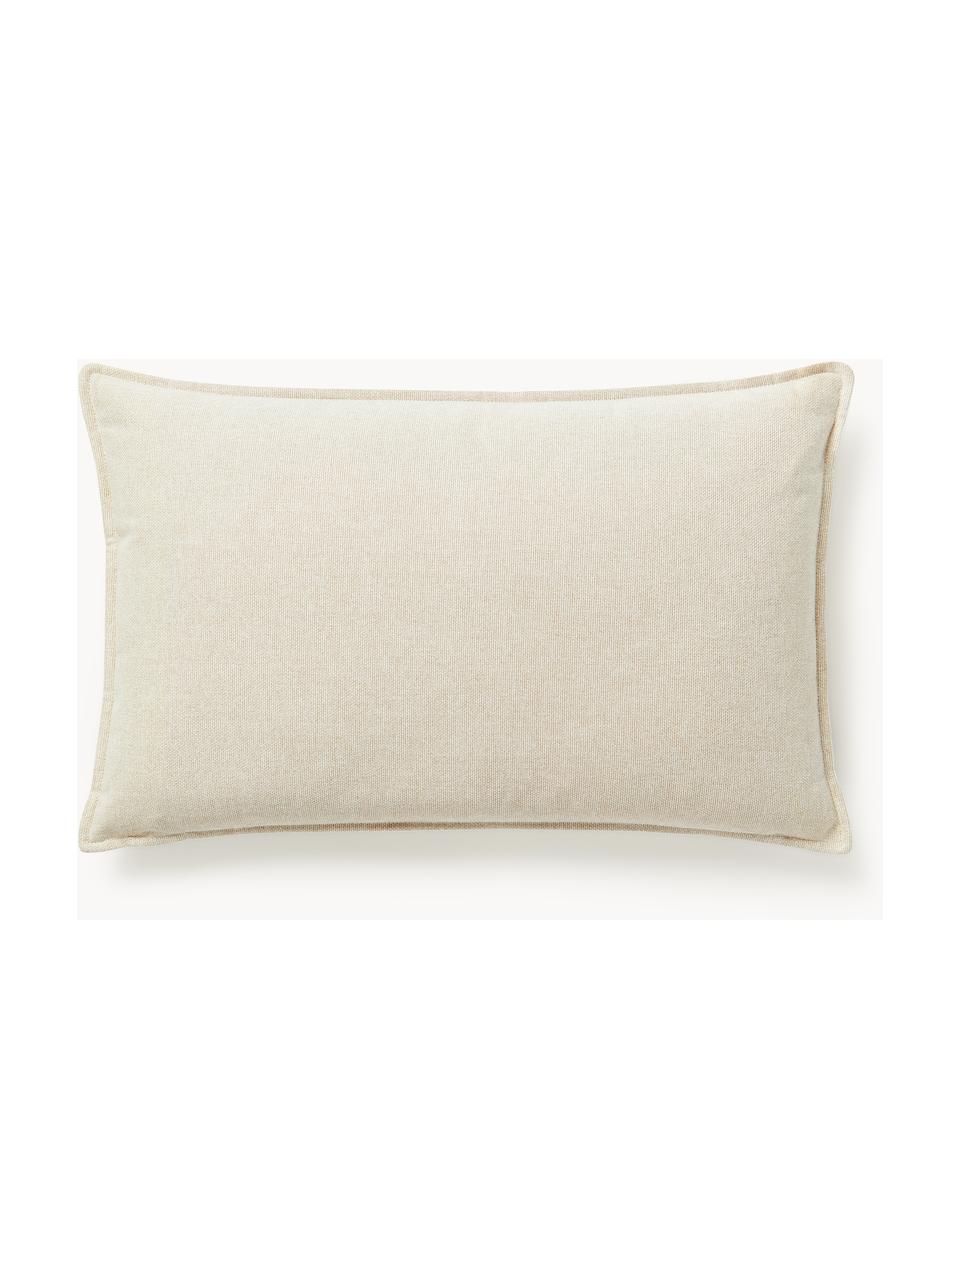 Cuscino decorativo Lennon, Rivestimento: 100% poliestere, Tessuto bianco crema, Larg. 50 x Lung. 80 cm